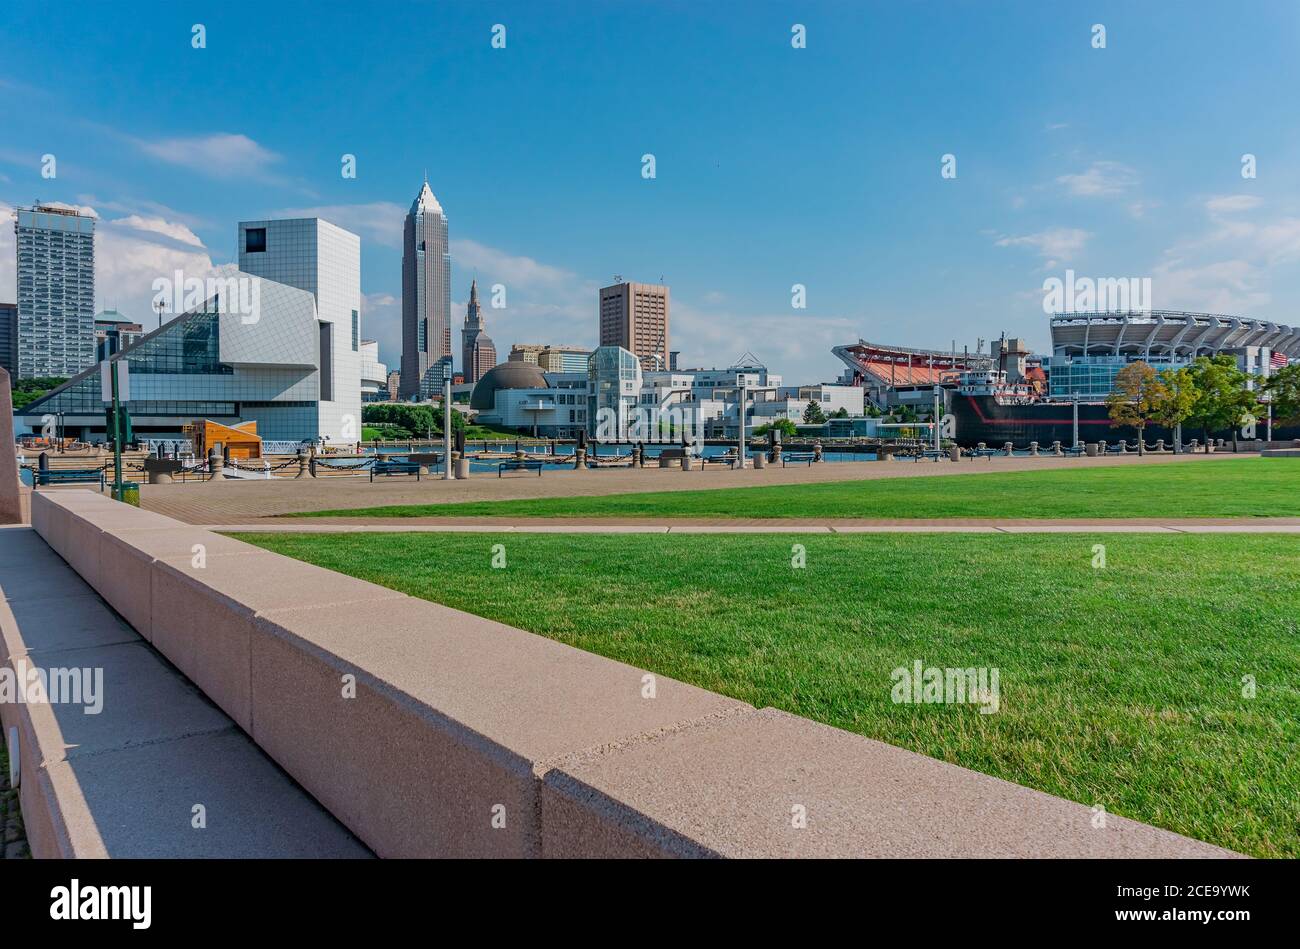 Il centro di Cleveland, Ohio, con il suo skyline contemporaneo, include uno stadio e un cargo. Le slips aperte dell'imbarcazione attendono le imbarcazioni in arrivo. Foto Stock